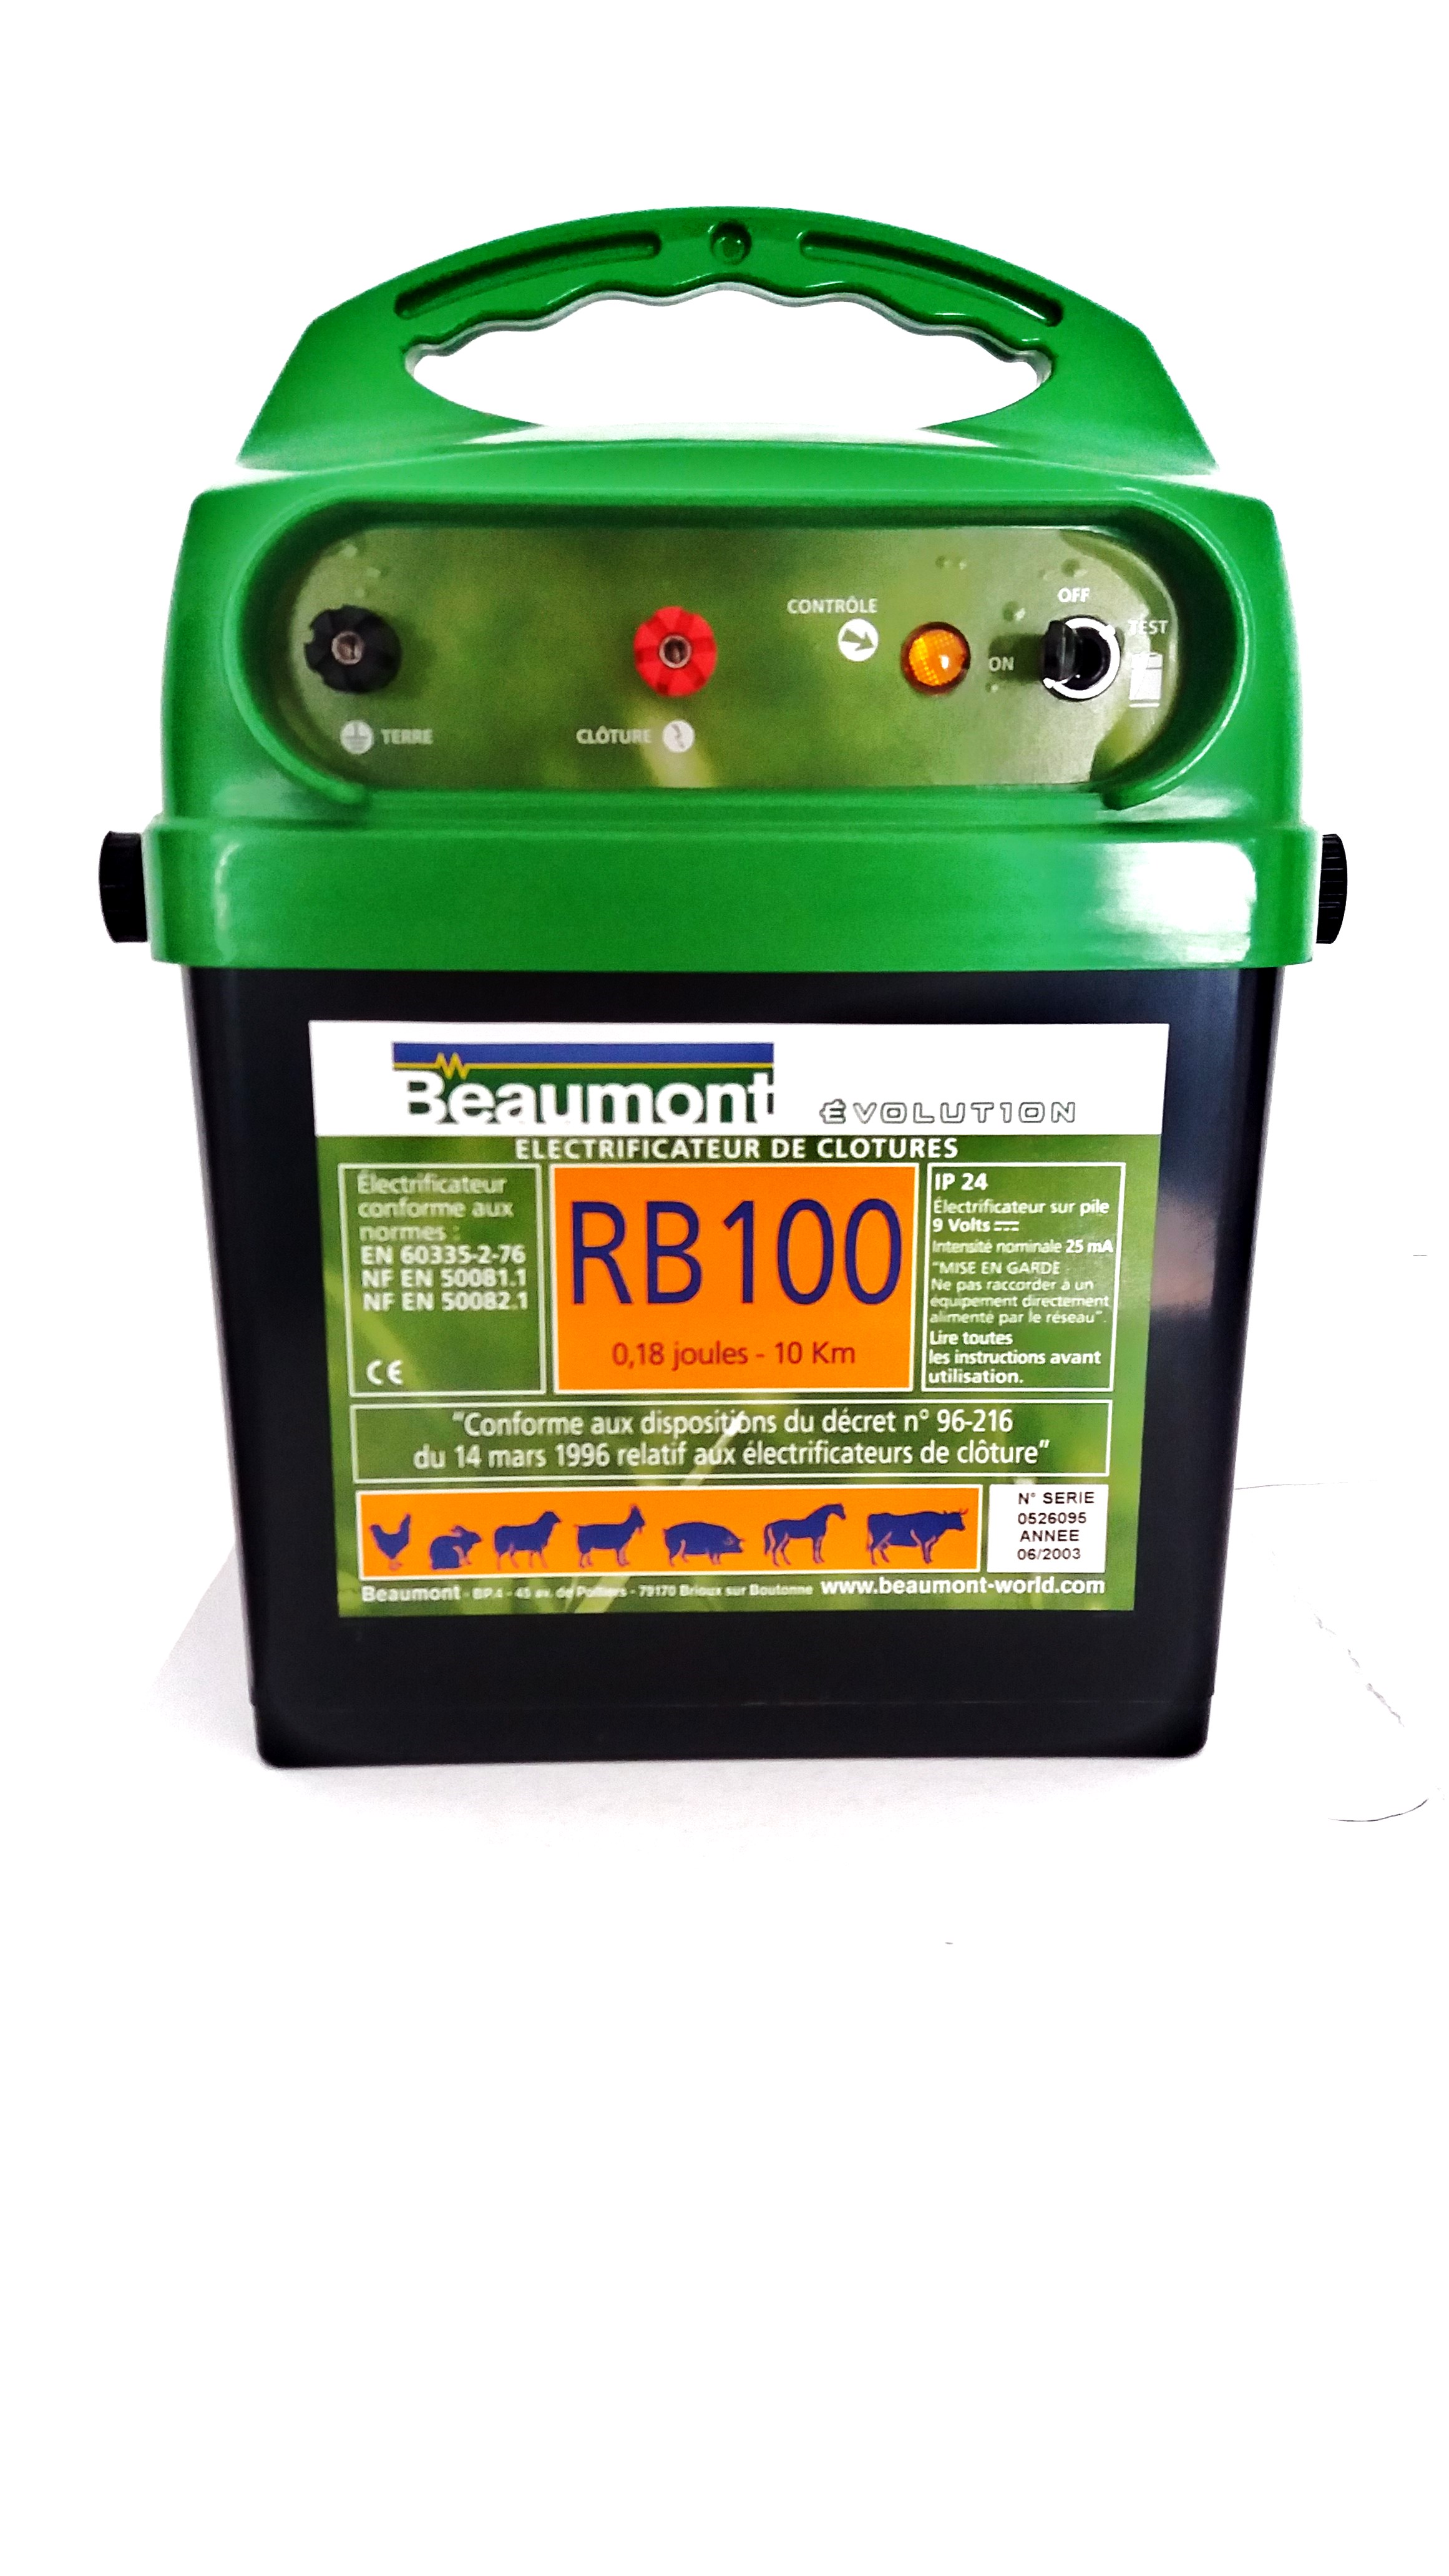 Συσκευή ηλεκτρικής περίφραξης Beaumont RB100 9 Volt, 10 km